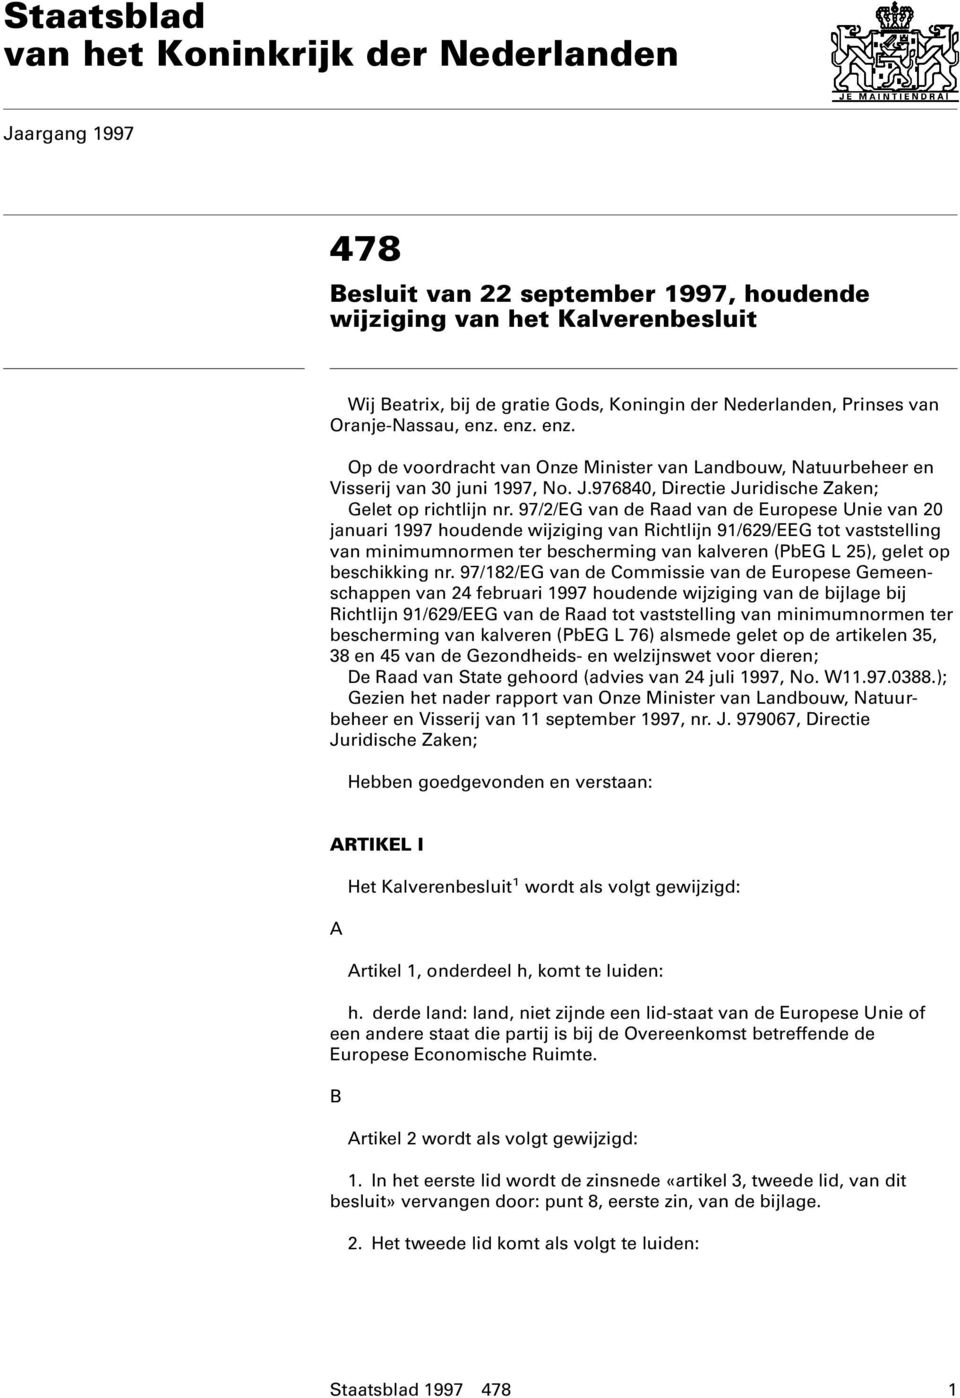 97/2/EG van de Raad van de Europese Unie van 20 januari 1997 houdende wijziging van Richtlijn 91/629/EEG tot vaststelling van minimumnormen ter bescherming van kalveren (PbEG L 25), gelet op